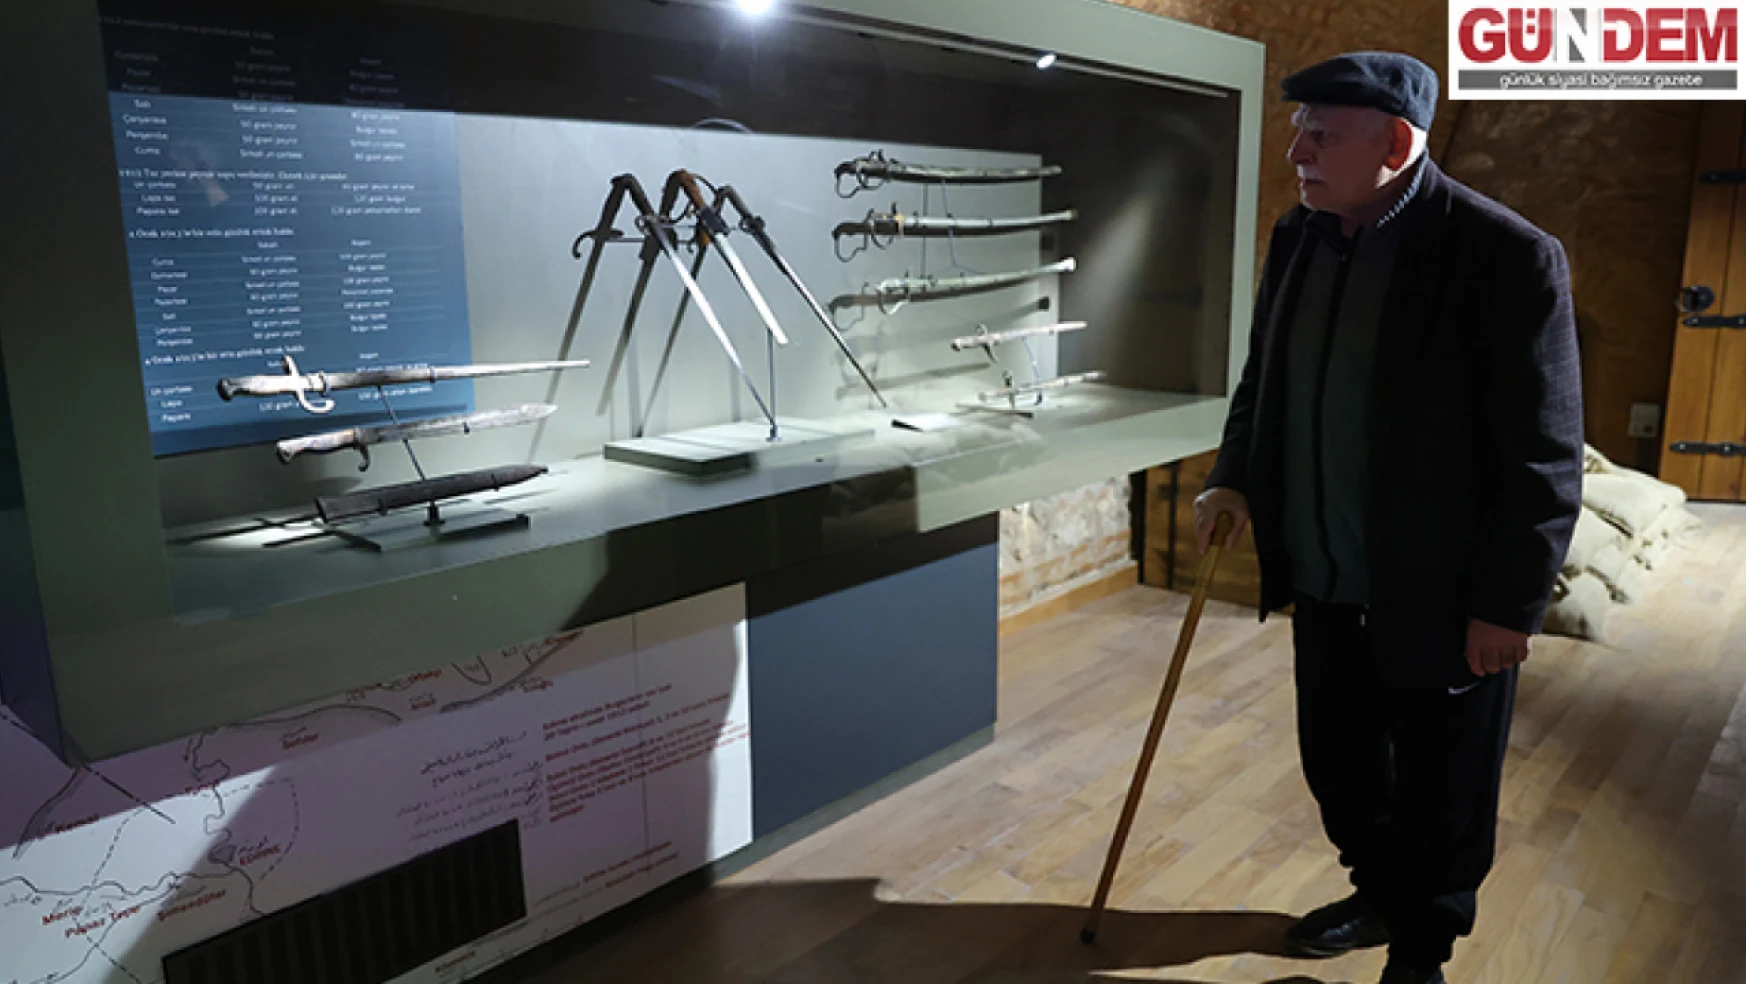 Edirne Balkan Tarihi Müzesi geçen yıl 47 bin ziyaretçi ağırladı